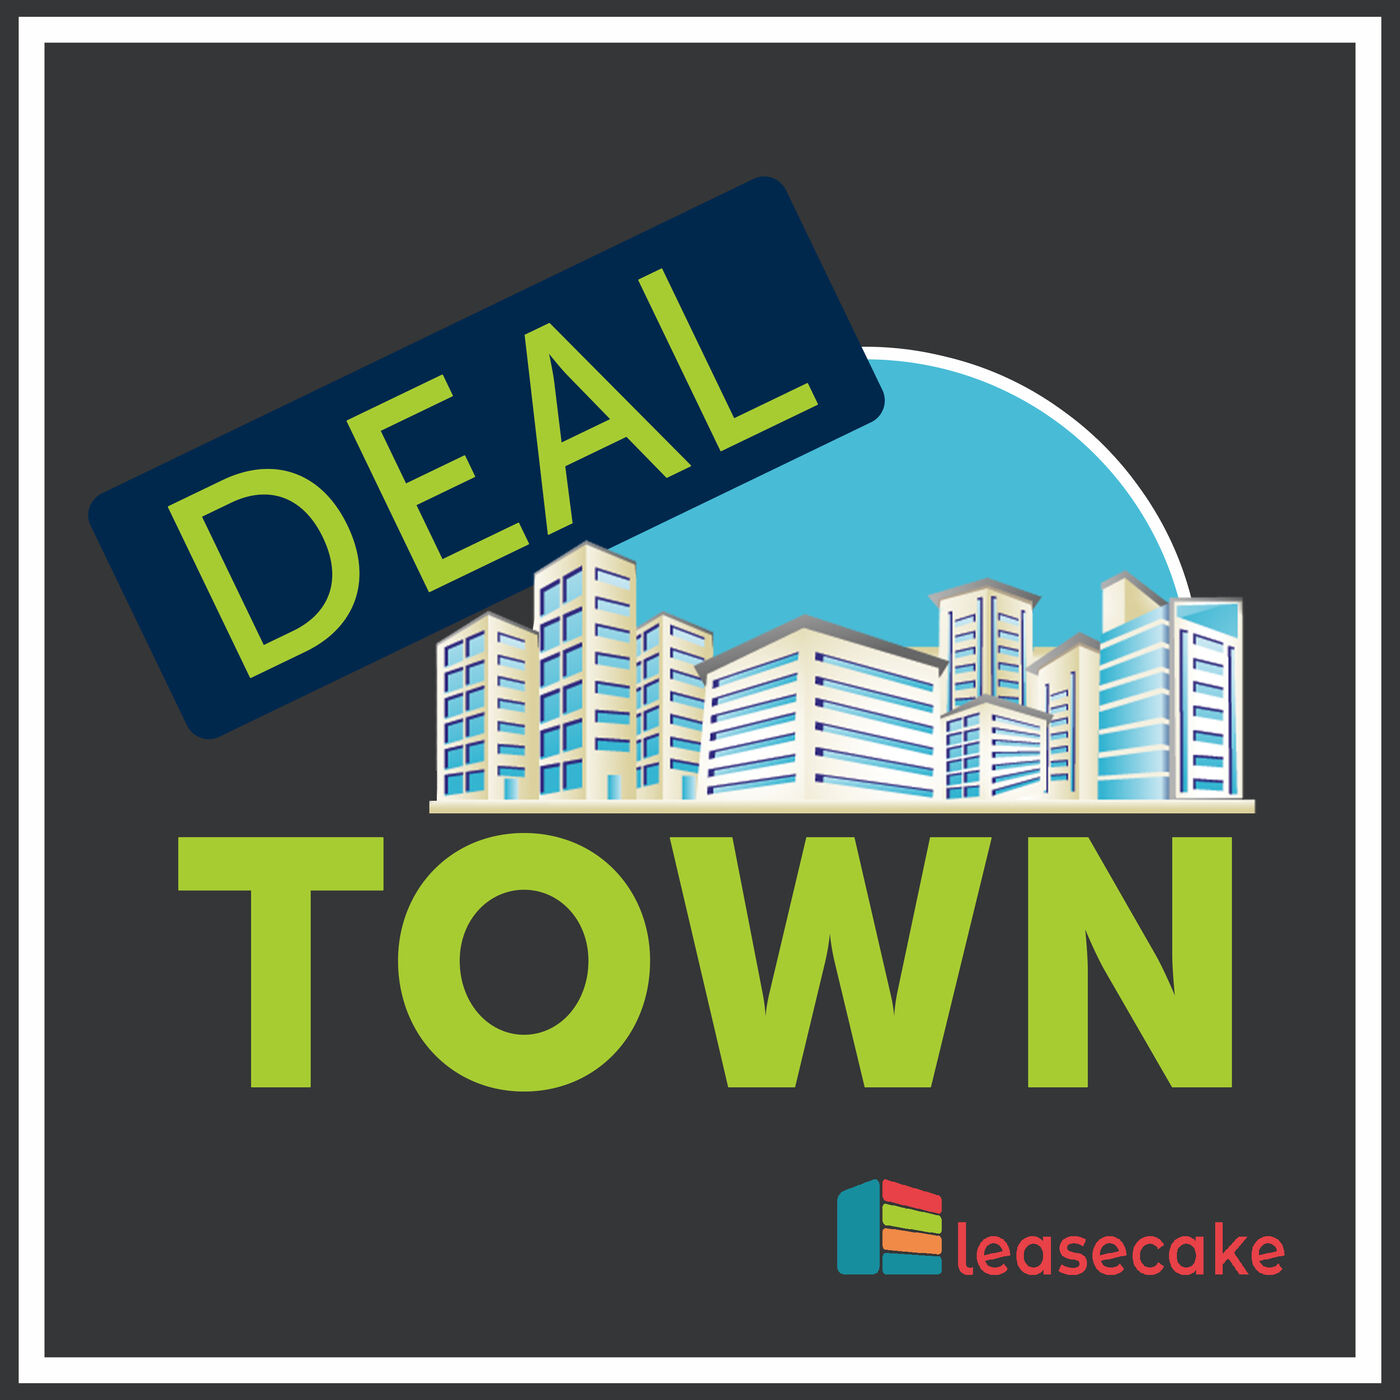 Deal Town